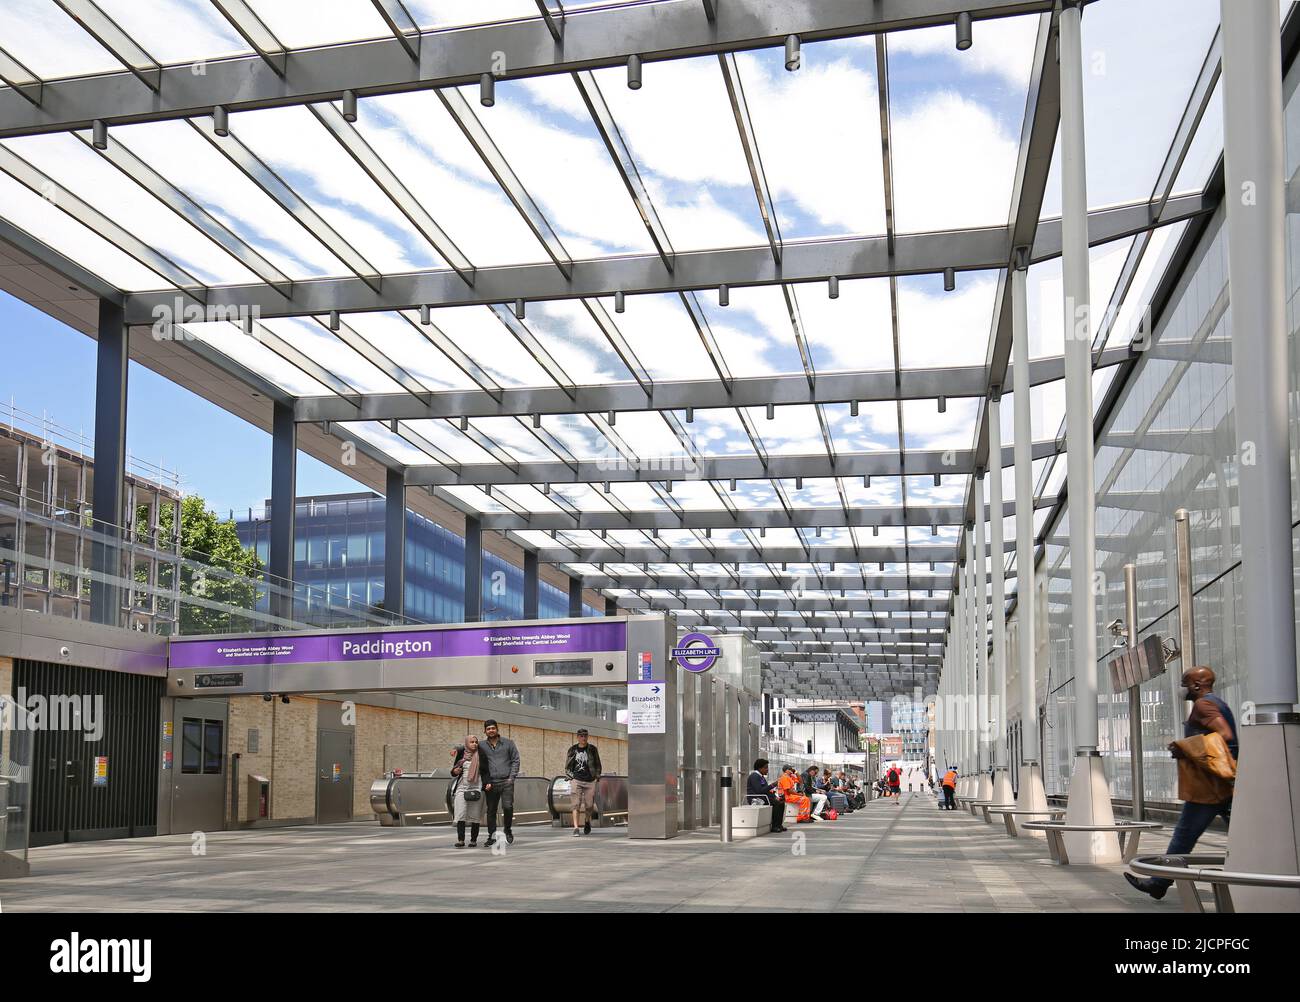 Neue ebenerdende Elizabeth Line (Crossrail)-Konkursanlage am Bahnhof Paddington, London, Großbritannien. Zeigt das bedruckte Glasdach und den Zugang zu den Zügen über die Rolltreppe. Stockfoto